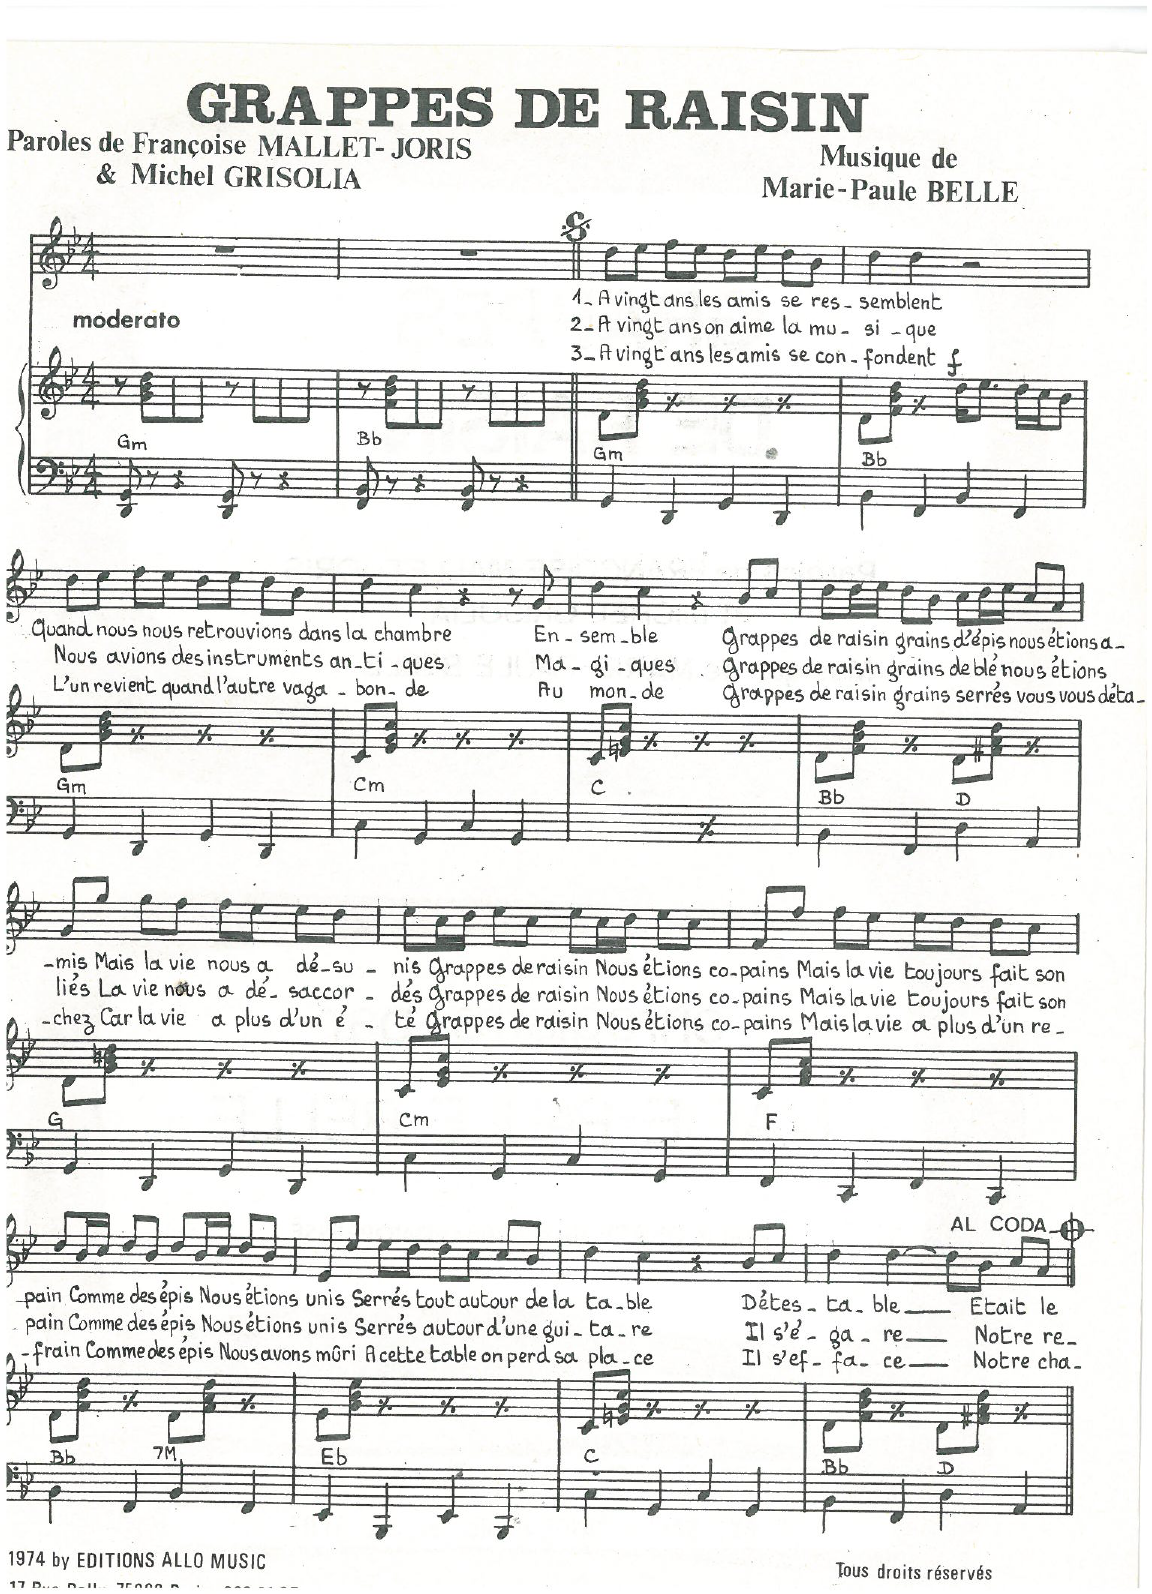 Michel Grisolia, Françoise Mallet-Joris and Marie Paule Belle Grappes De Raisin Sheet Music Notes & Chords for Piano & Vocal - Download or Print PDF